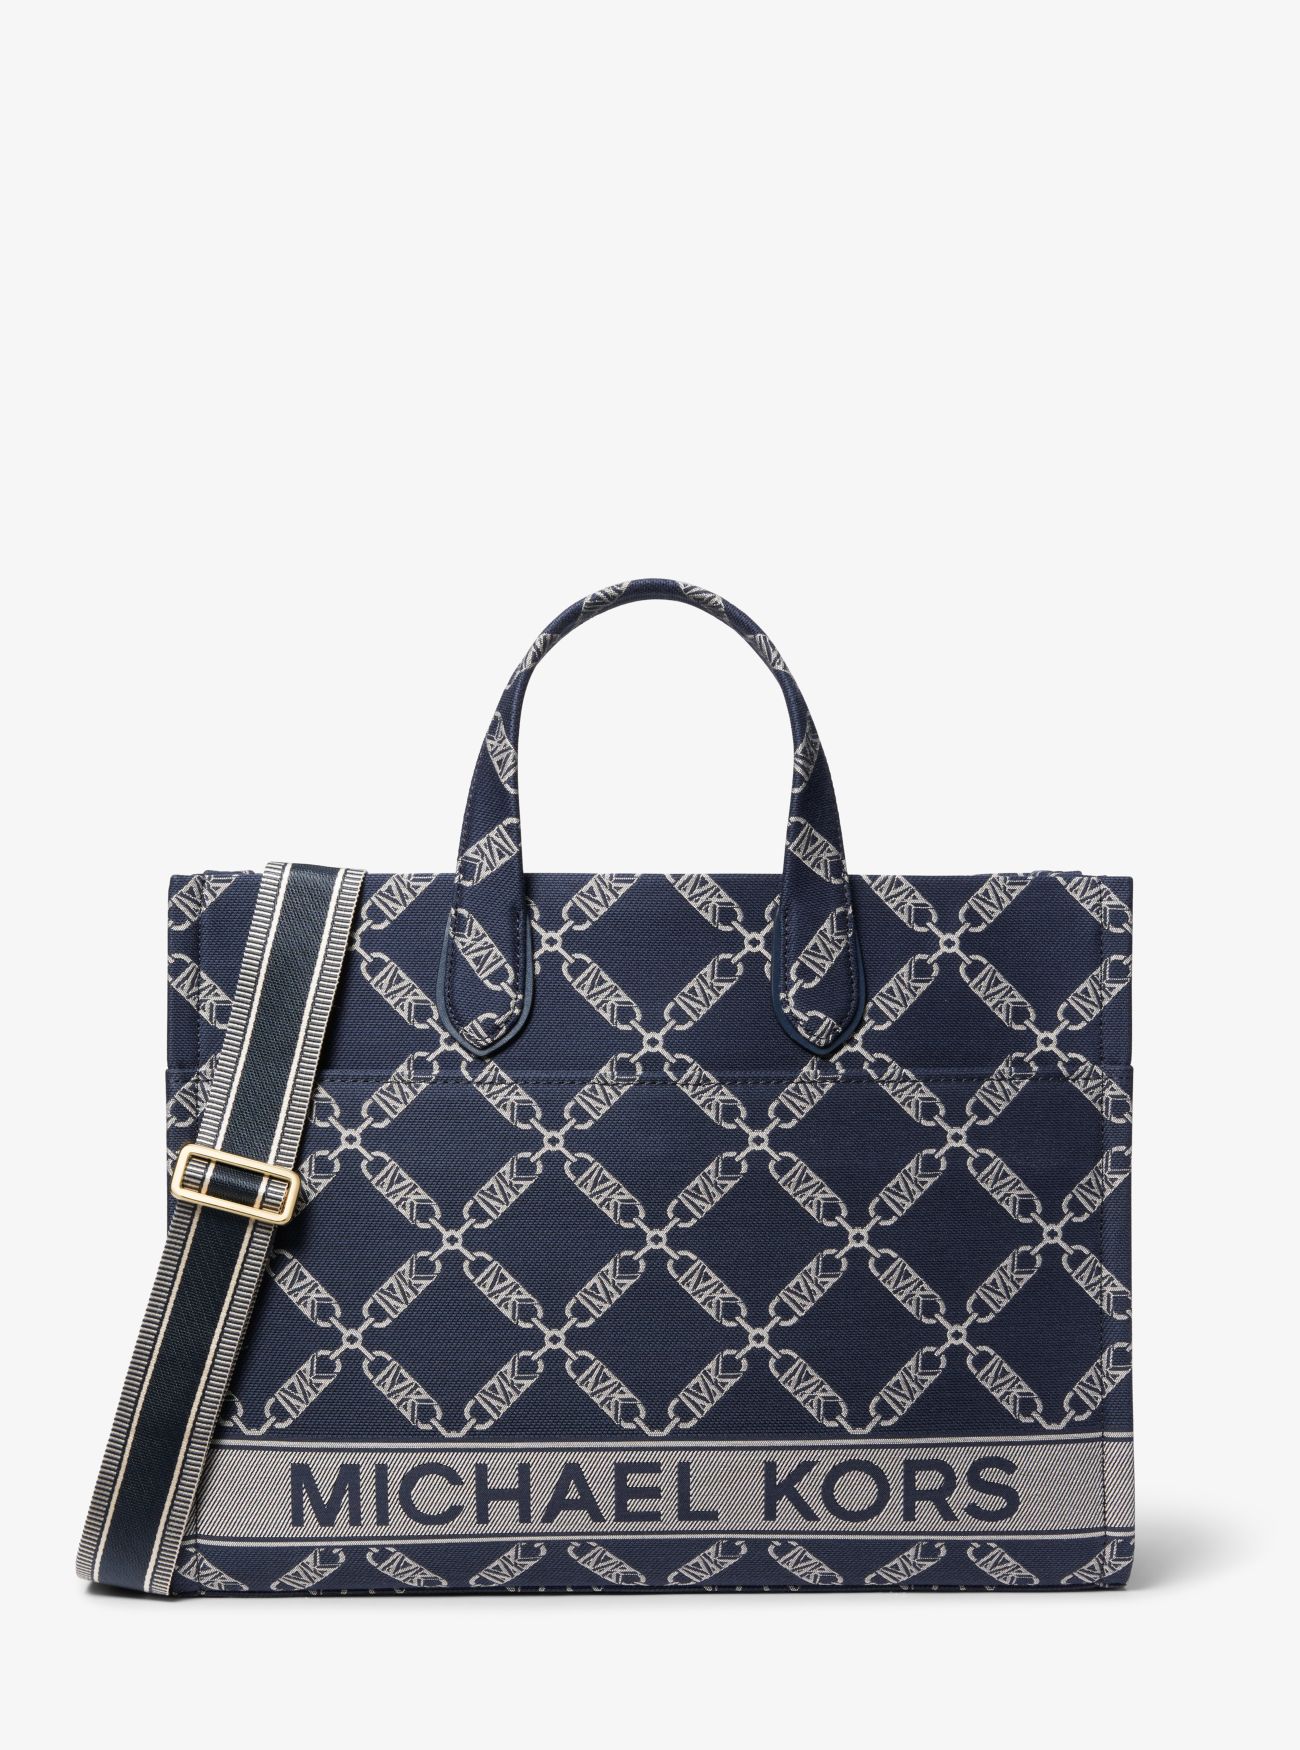 MK Gigi Large Empire Logo Jacquard Large Tote Bag - Blue - Michael Kors